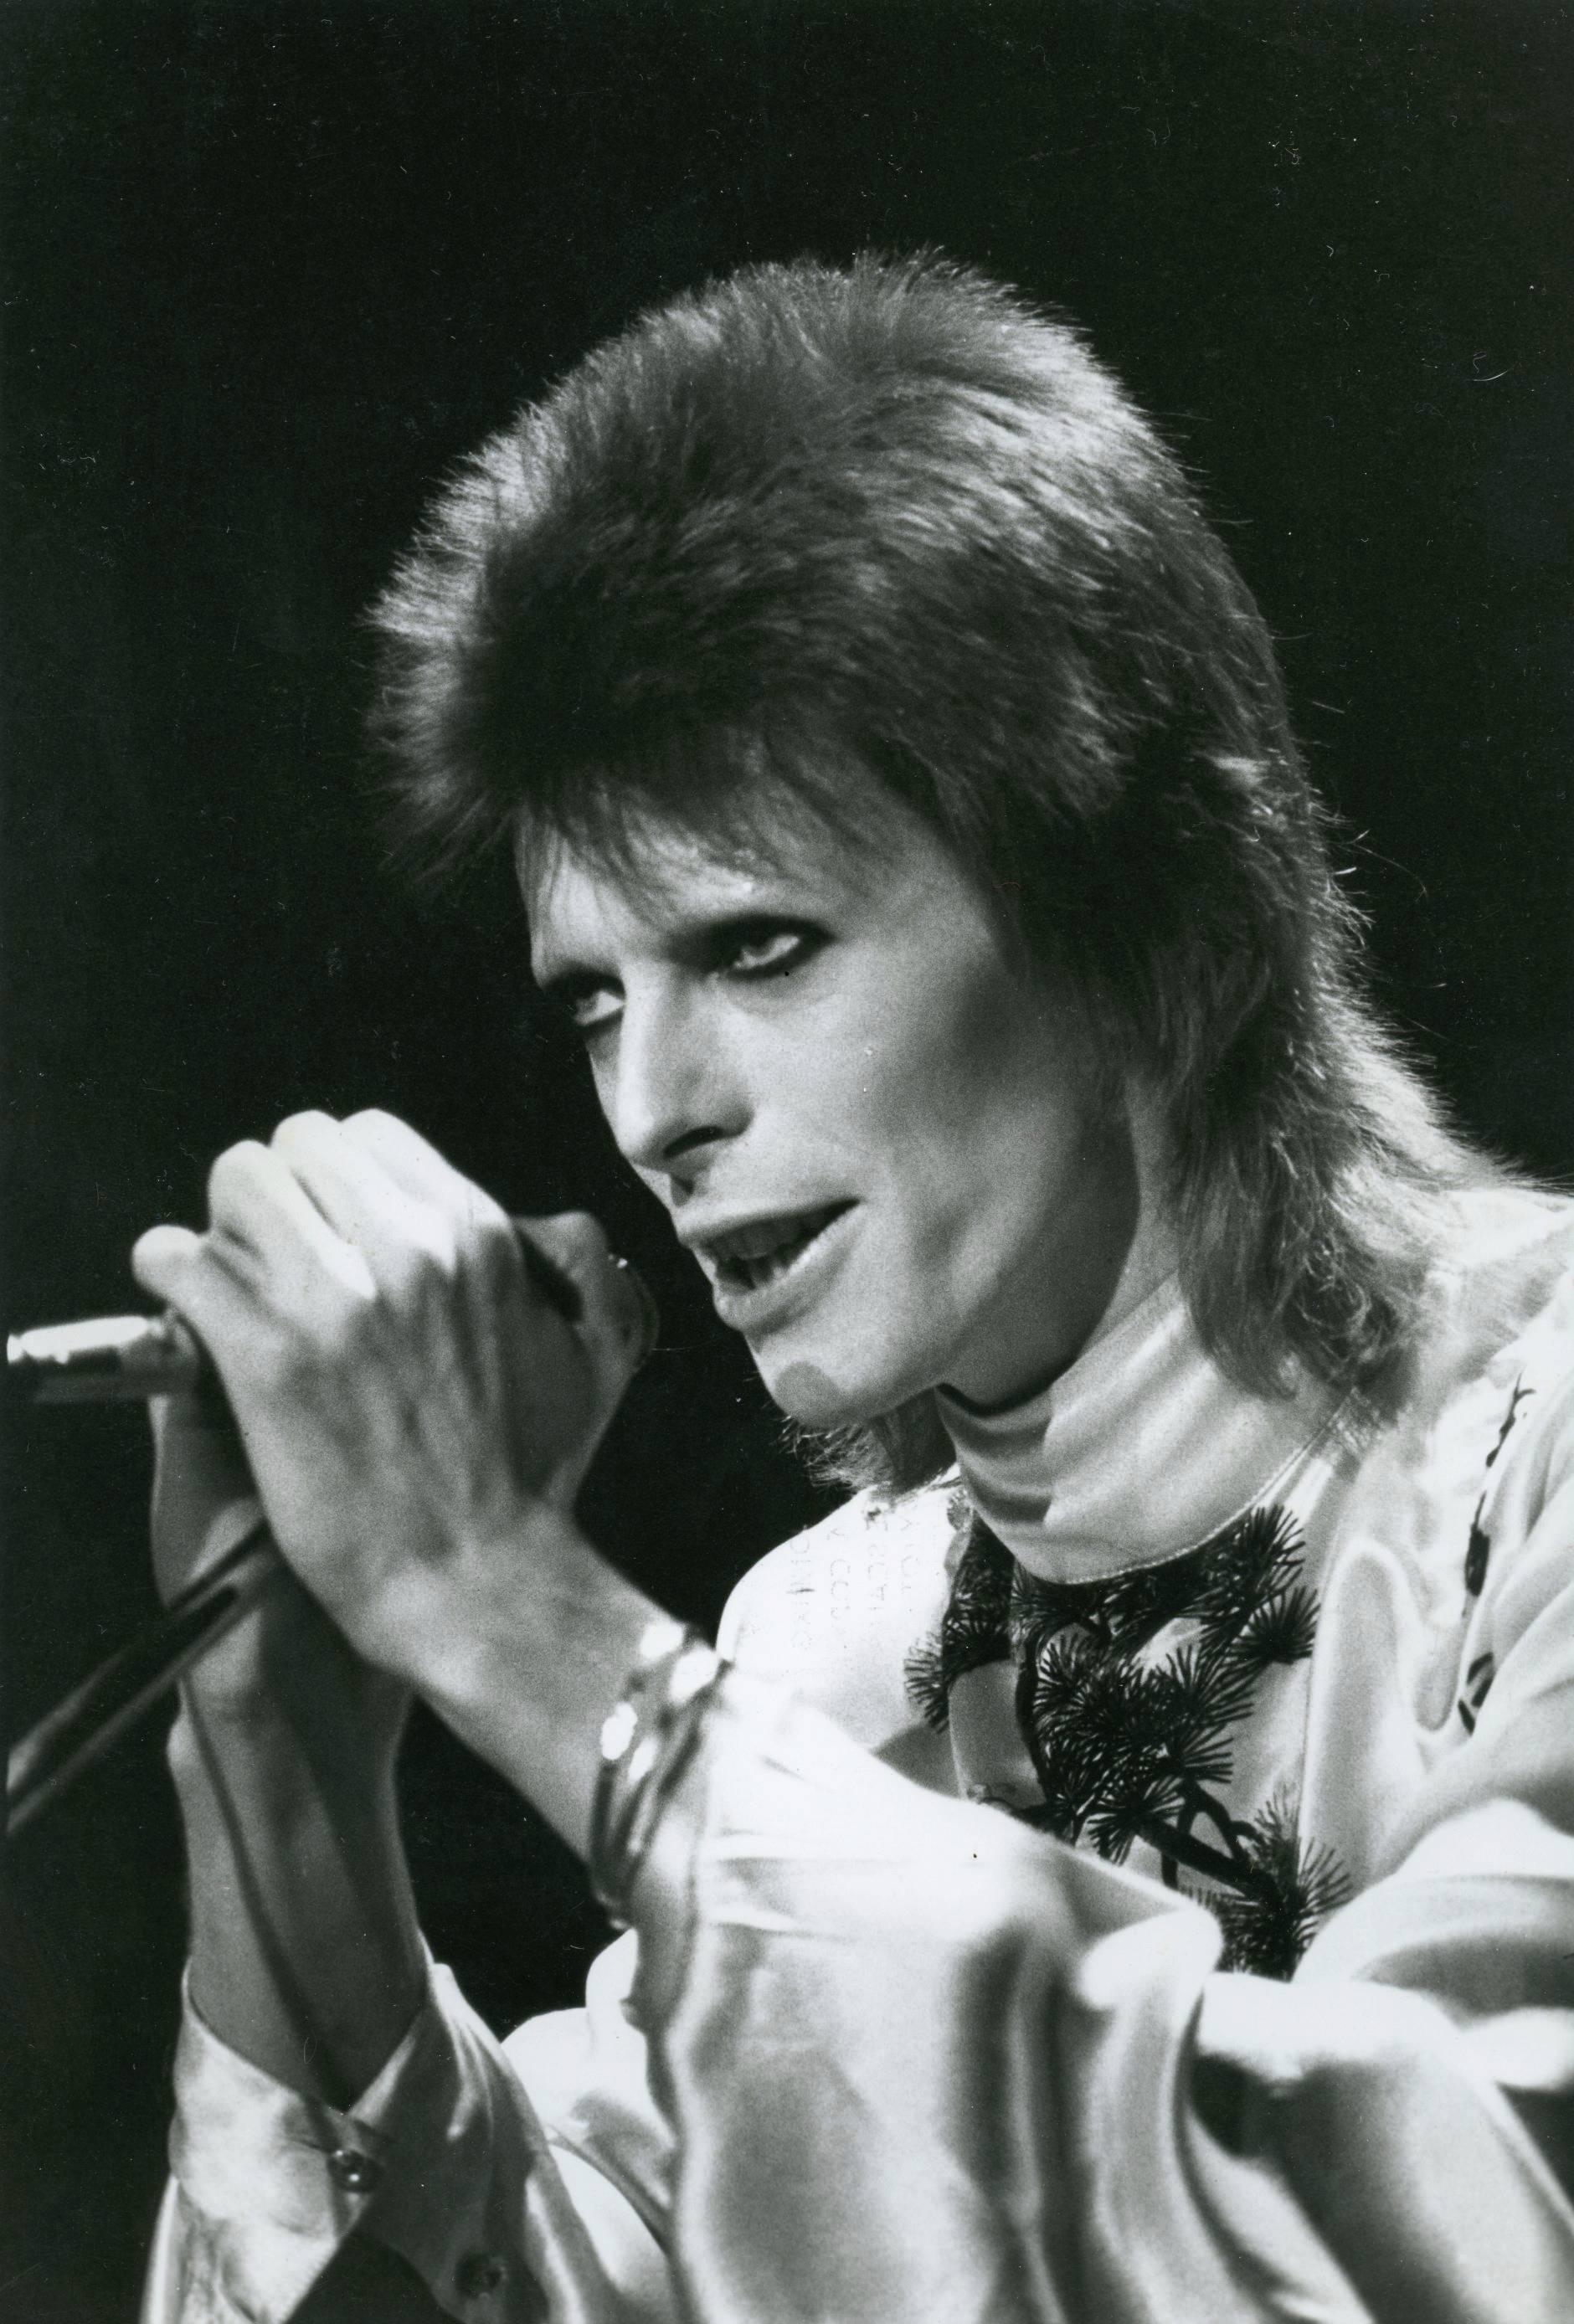 Unknown Portrait Photograph - David Bowie Vintage Original Photograph